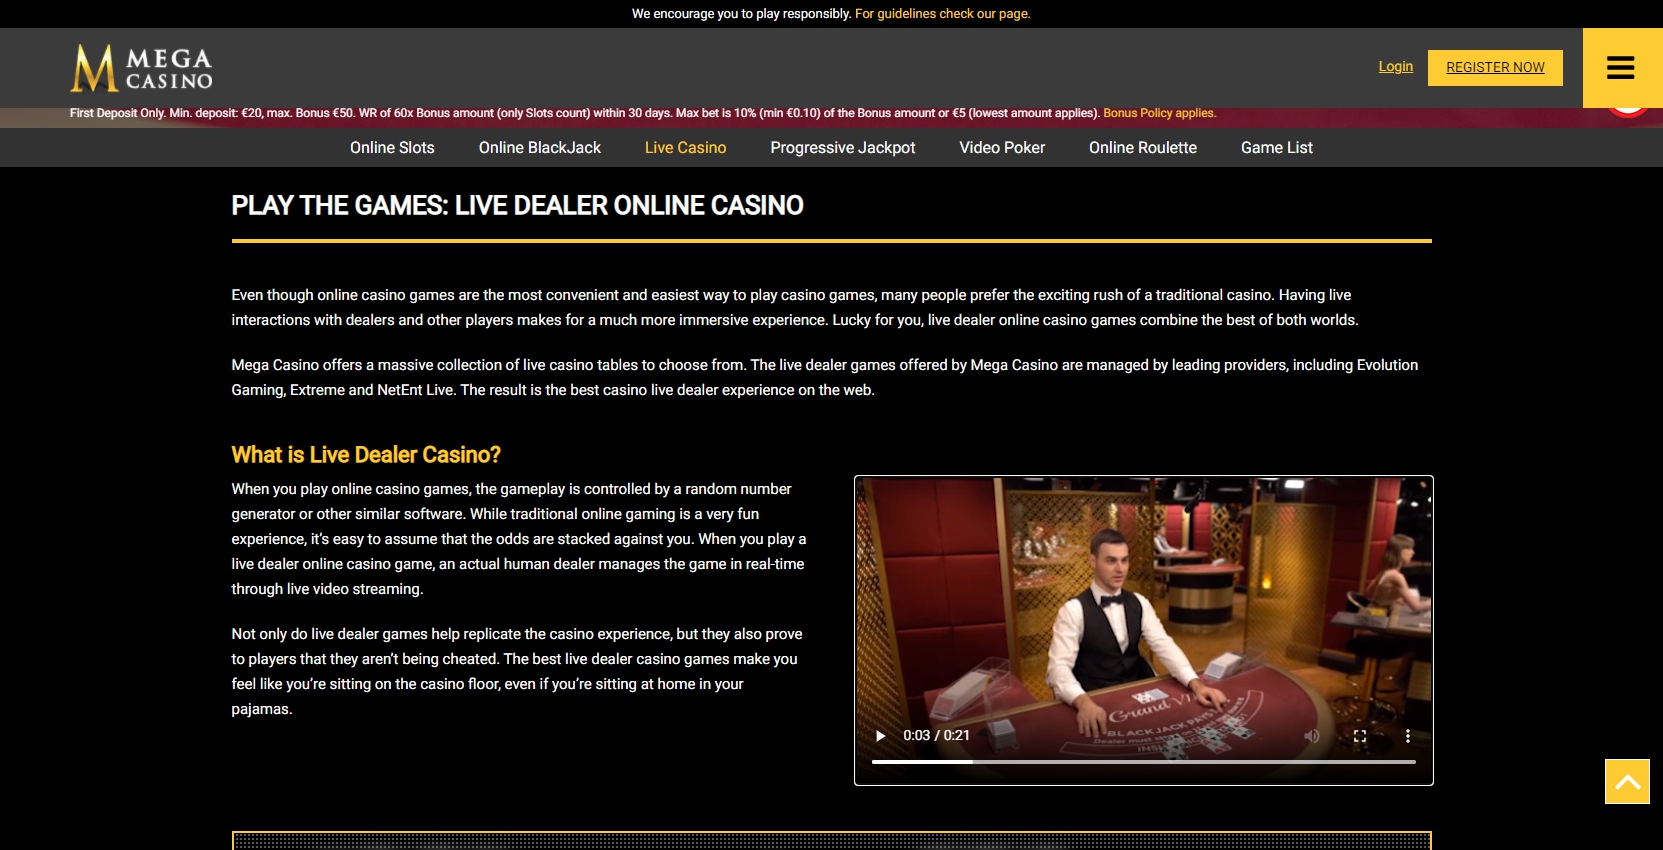 Mega Casino Live Dealer Games